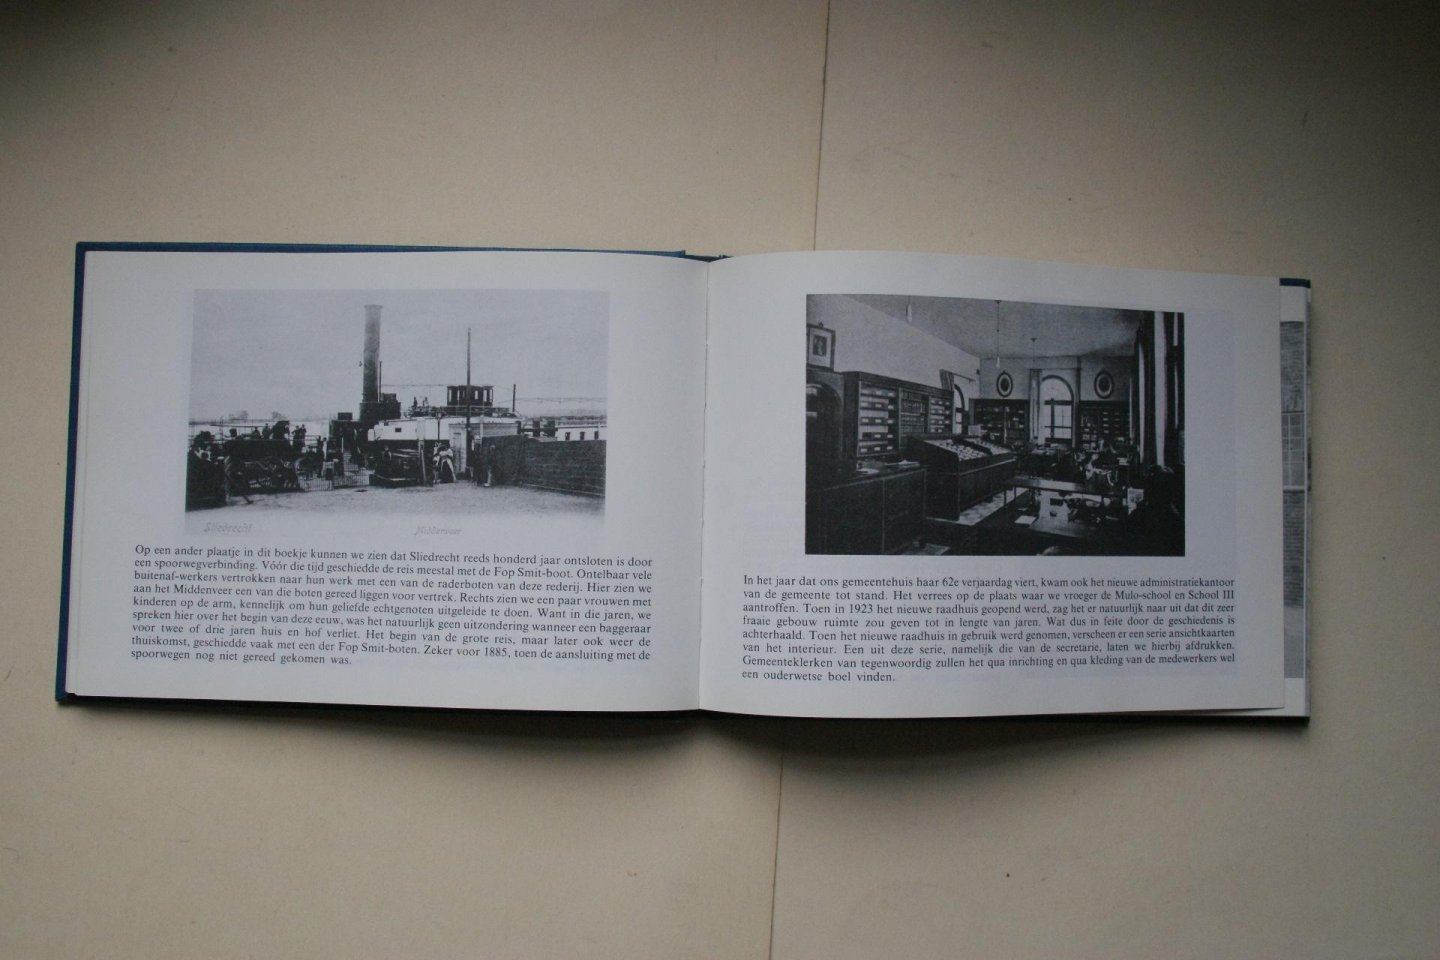 Laak, P.J. ter - 5 boeken: SLIEDRECHTSE Plaatjes en Praatjes foto's van Oud Sliedrecht van 1900 tot 1950   &   SLIEDRECHT in de goede oude tijd   &   SLIEDRECHT uit Oma's foto-album   &   SLIEDRECHTSE kiekjes uit grootmoederstijd   &   KENT U ZE NOG..de SLIEDRECHTERS